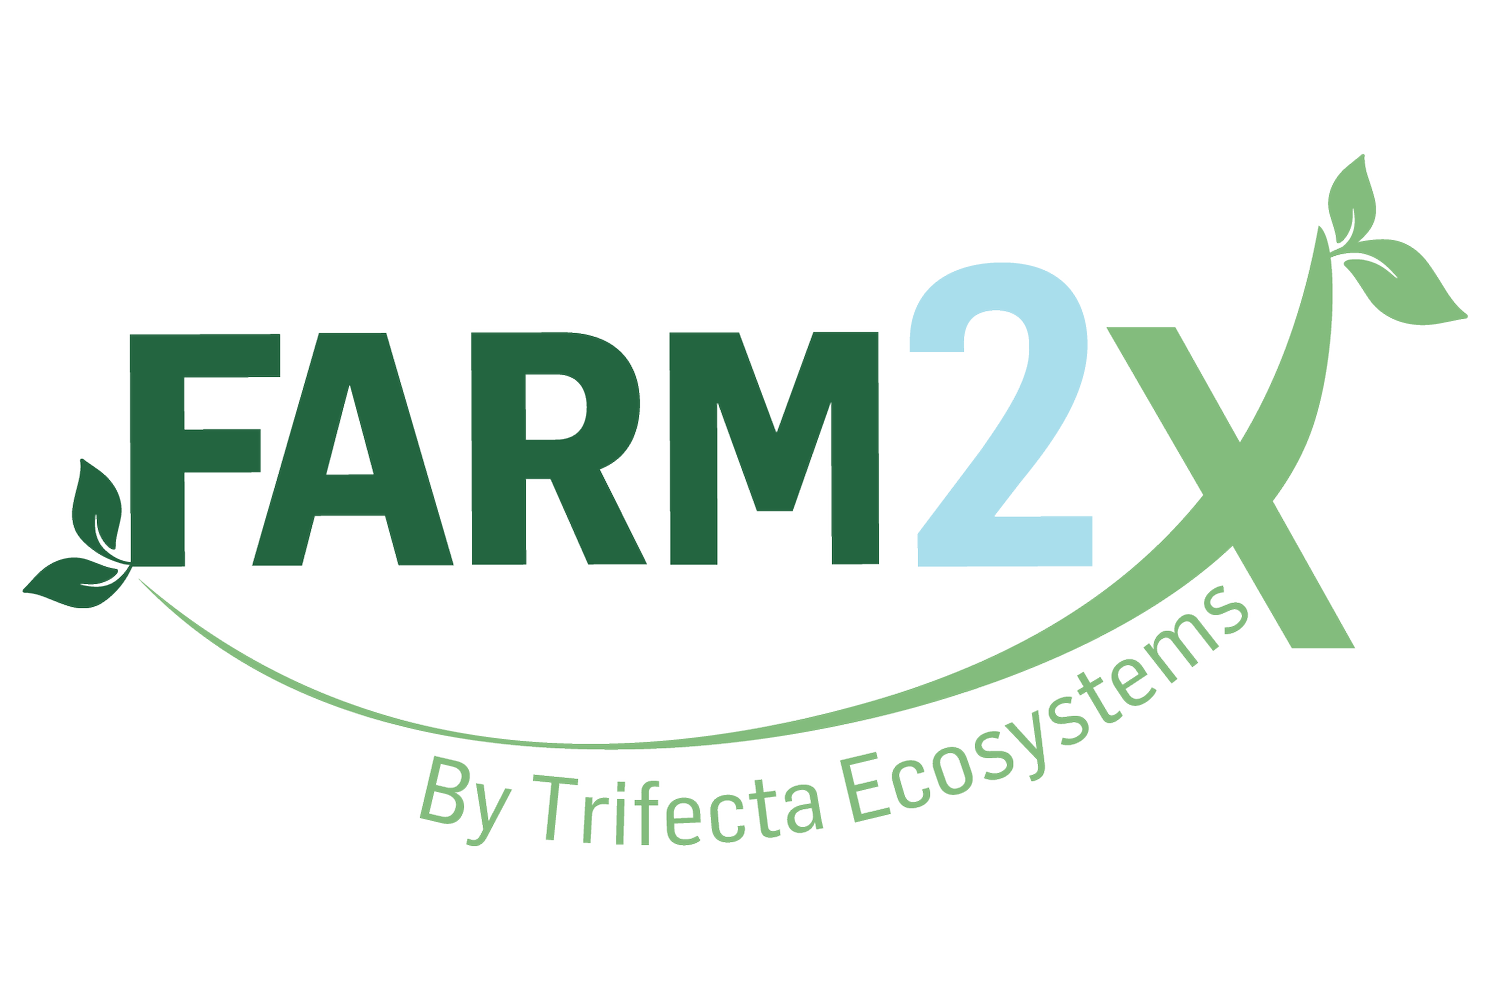 Farm2x